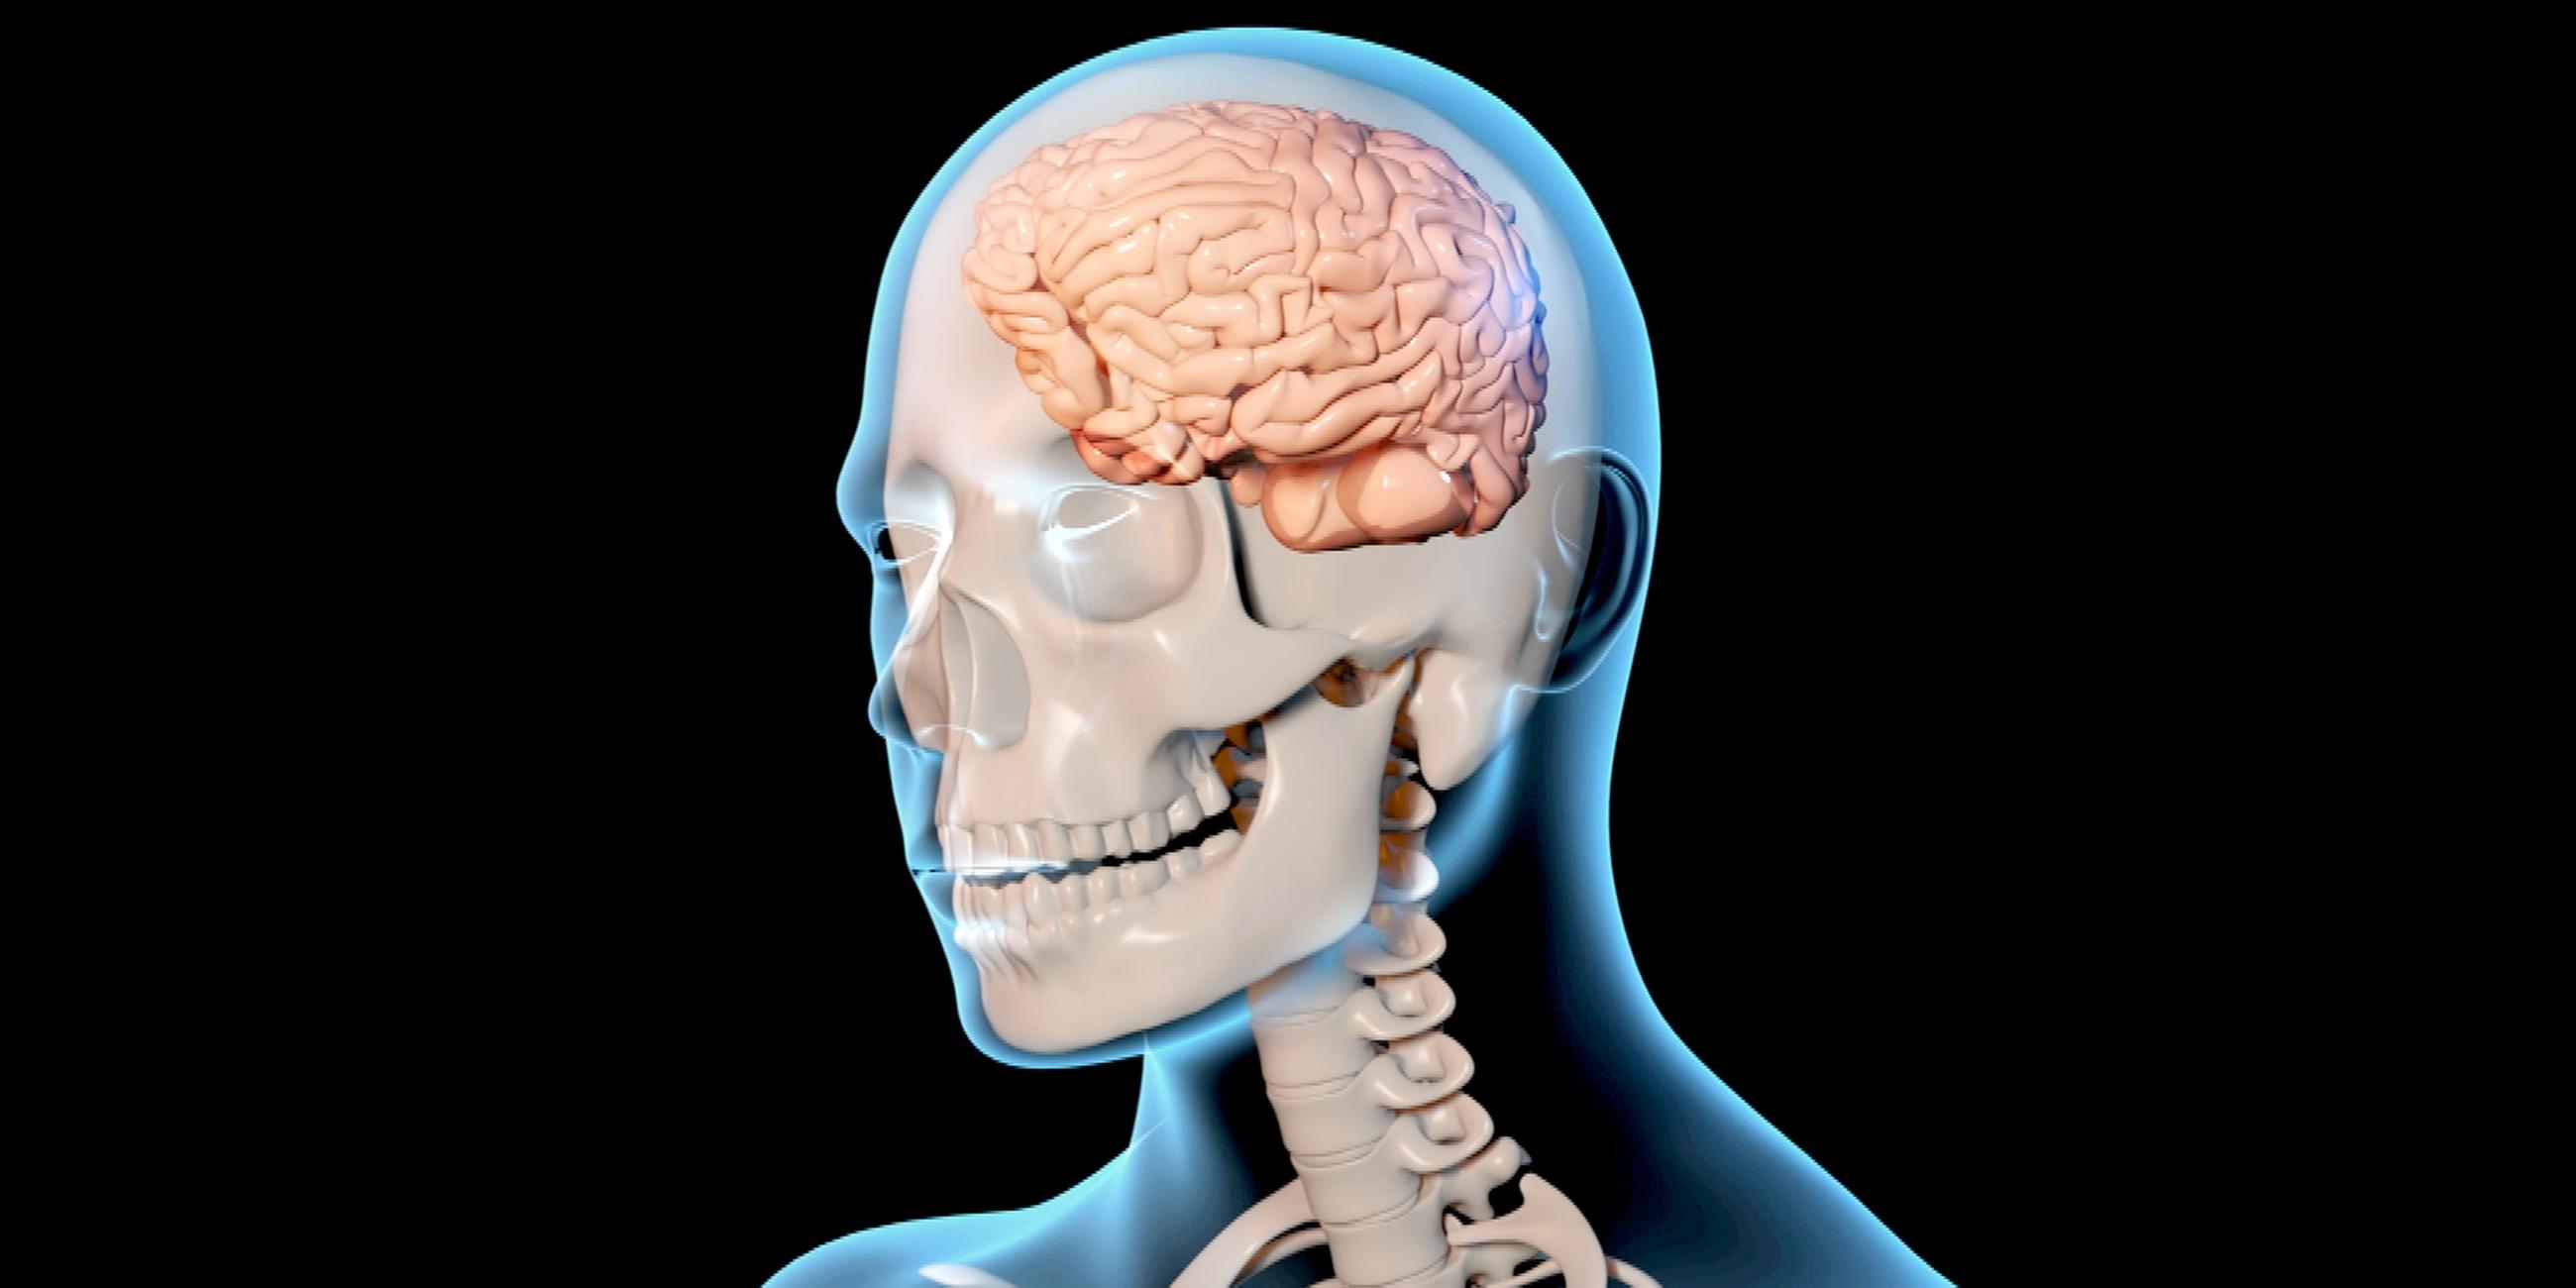 Graphik eines menschlichen Skeletts mit einem Gehirn.